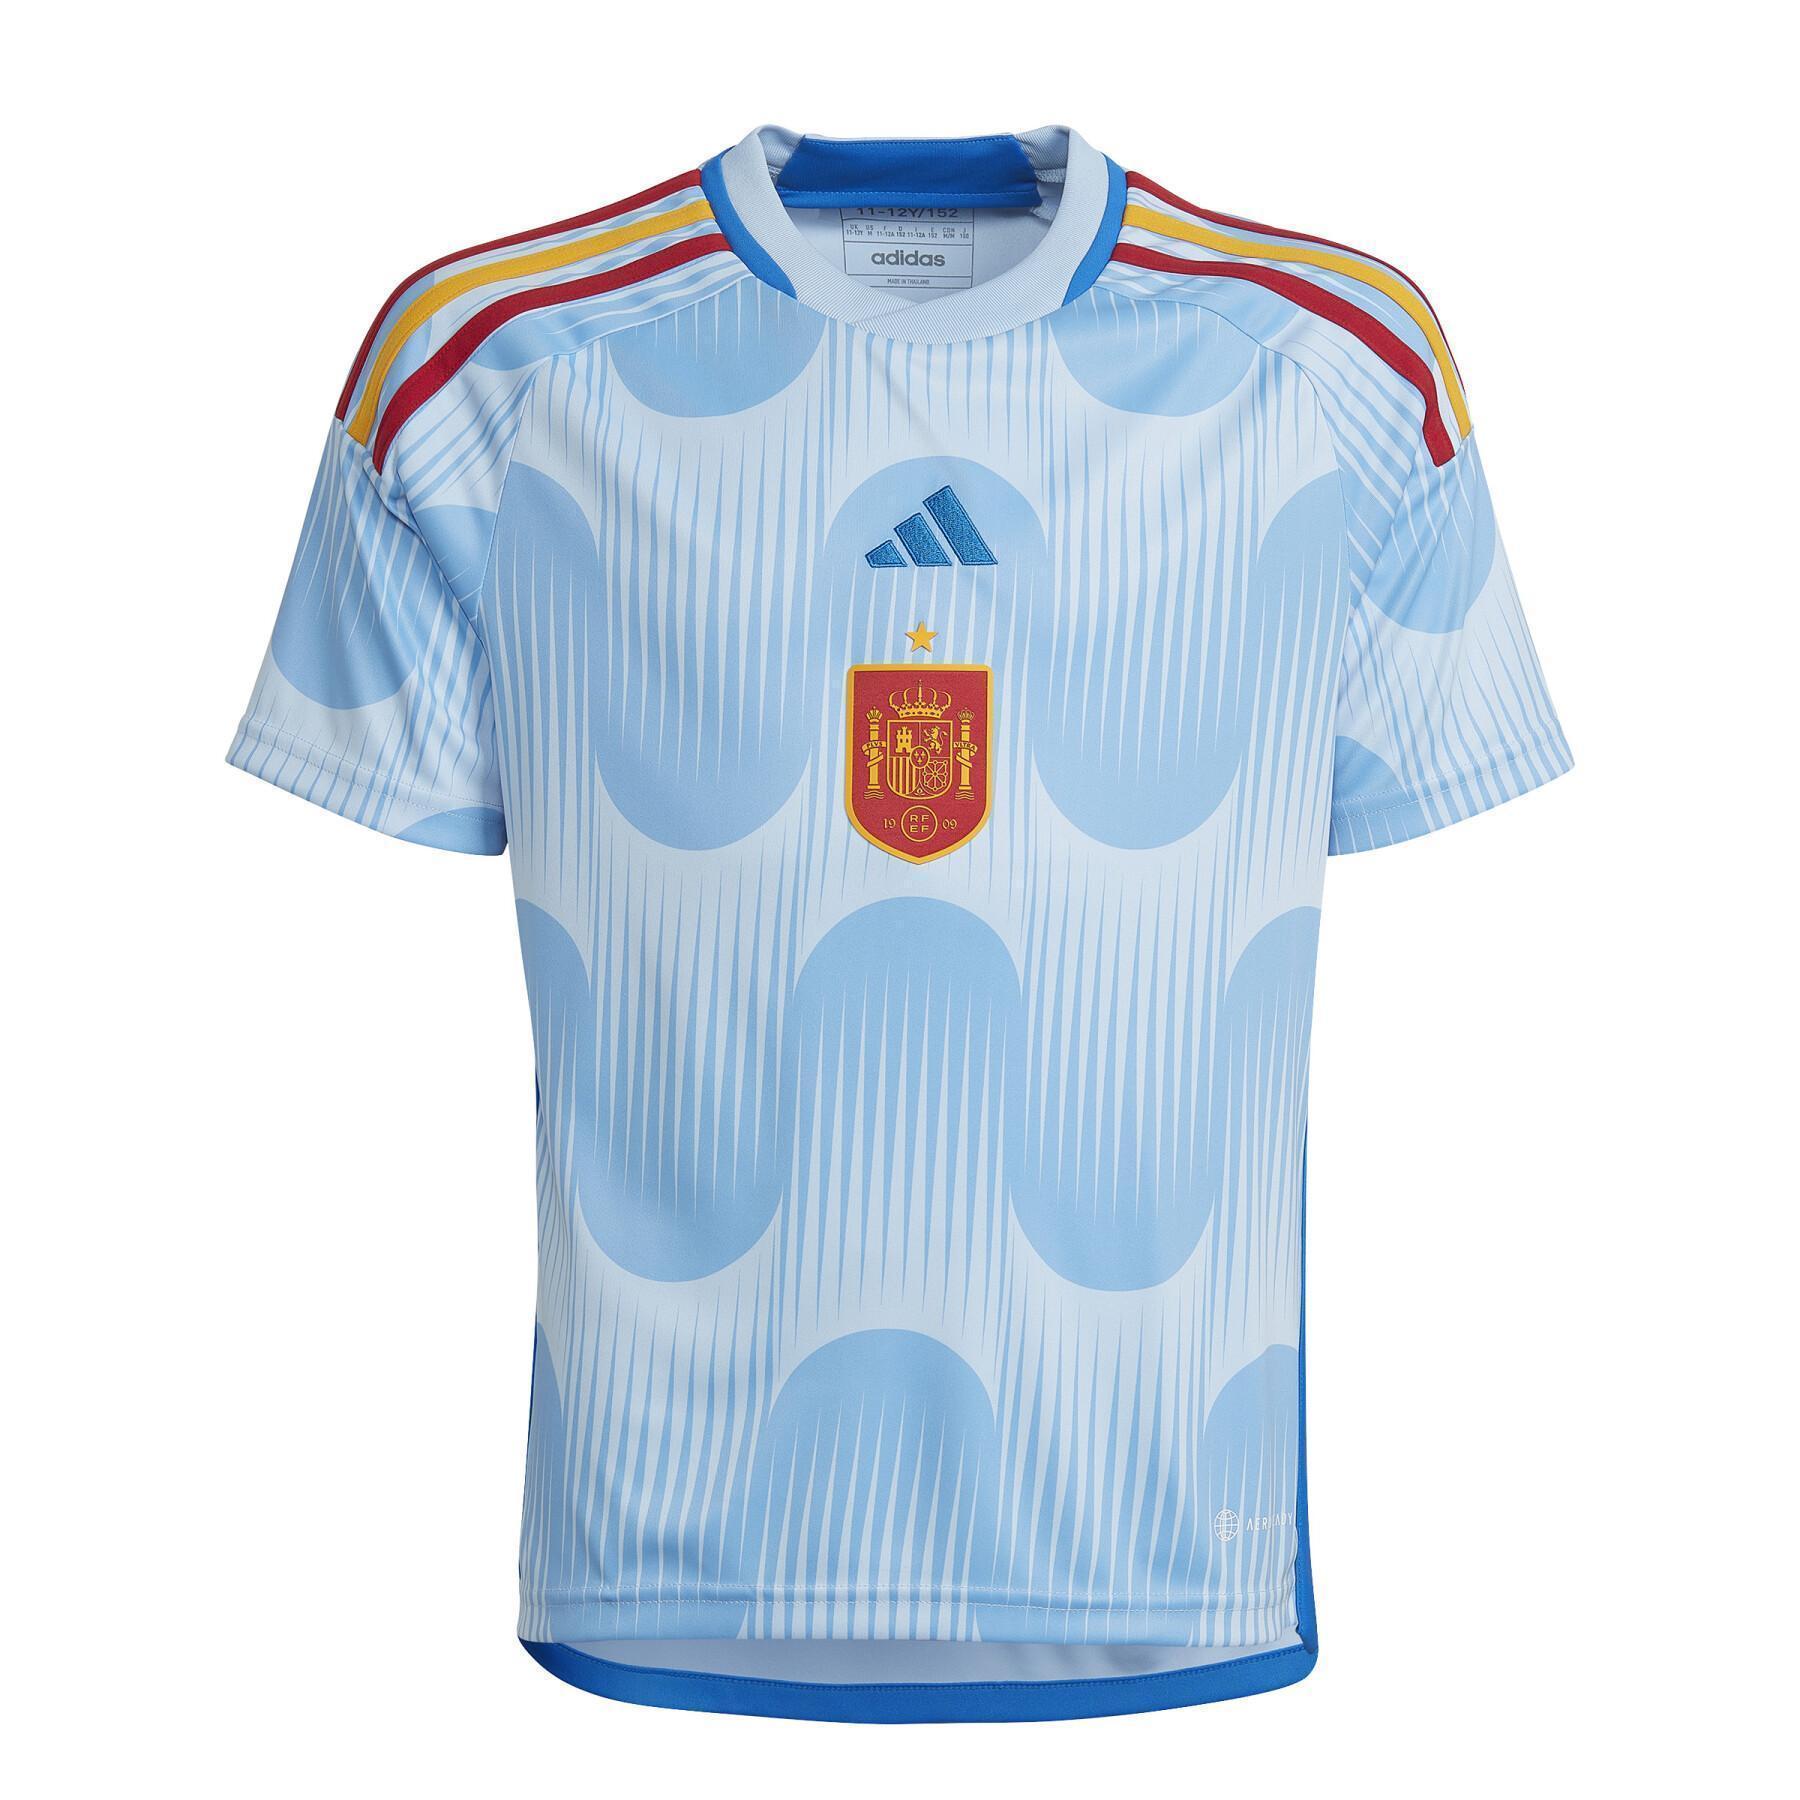 Children's World Cup 2022 jersey Espagne